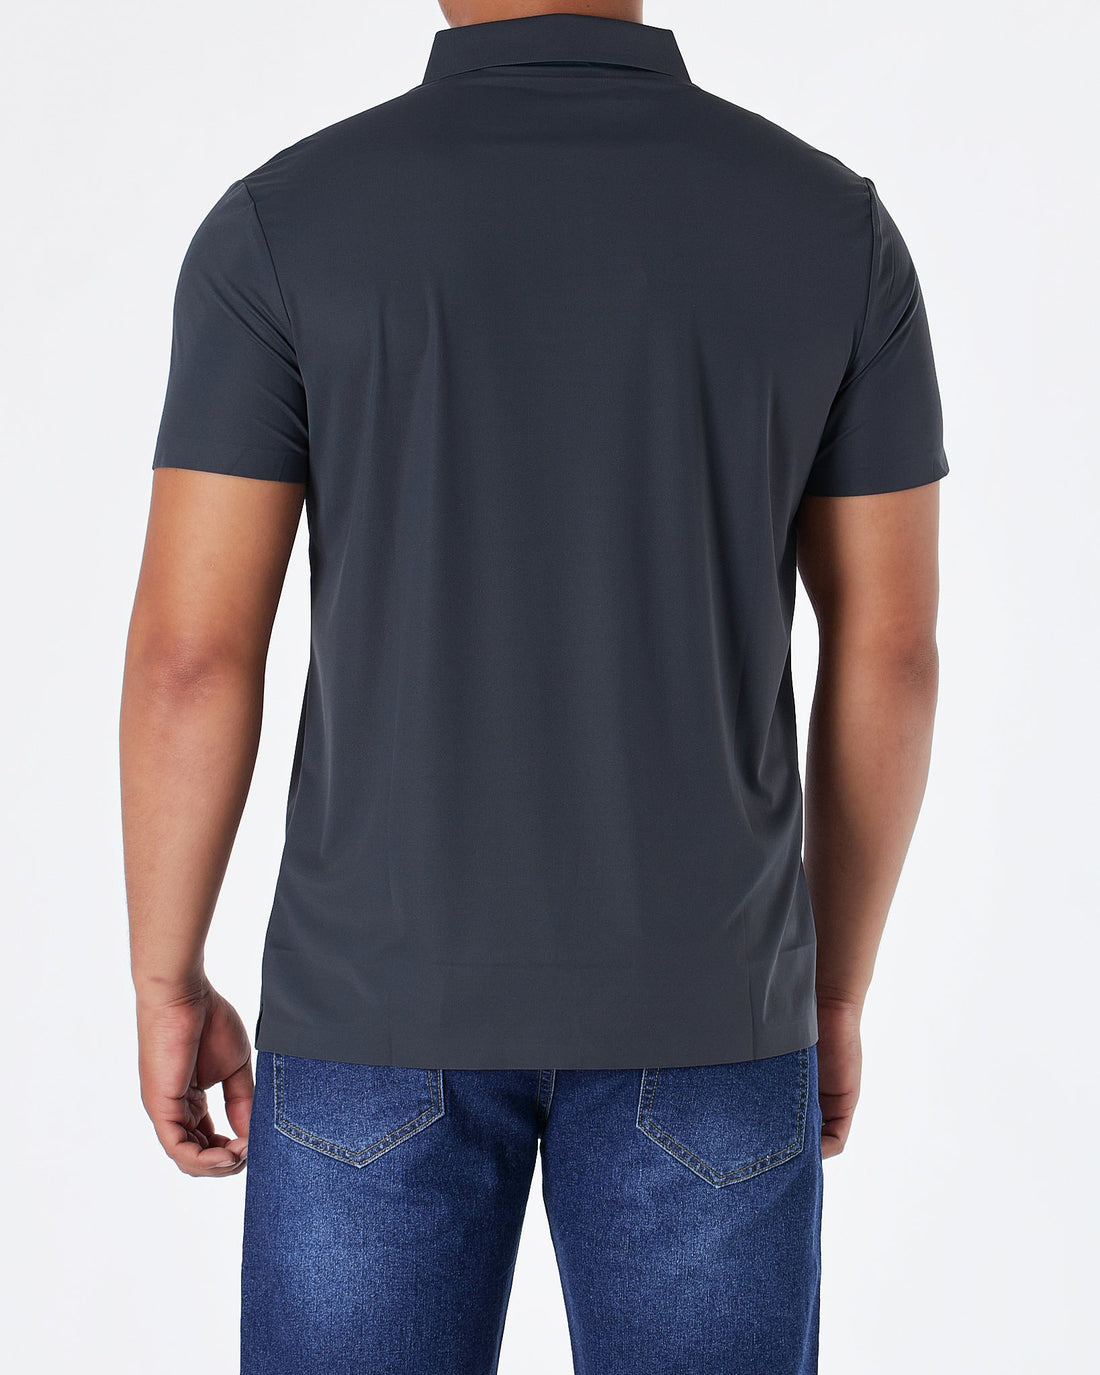 MOI OUTFIT-Hermes Zip Collar Men Polo Shirt 59.90